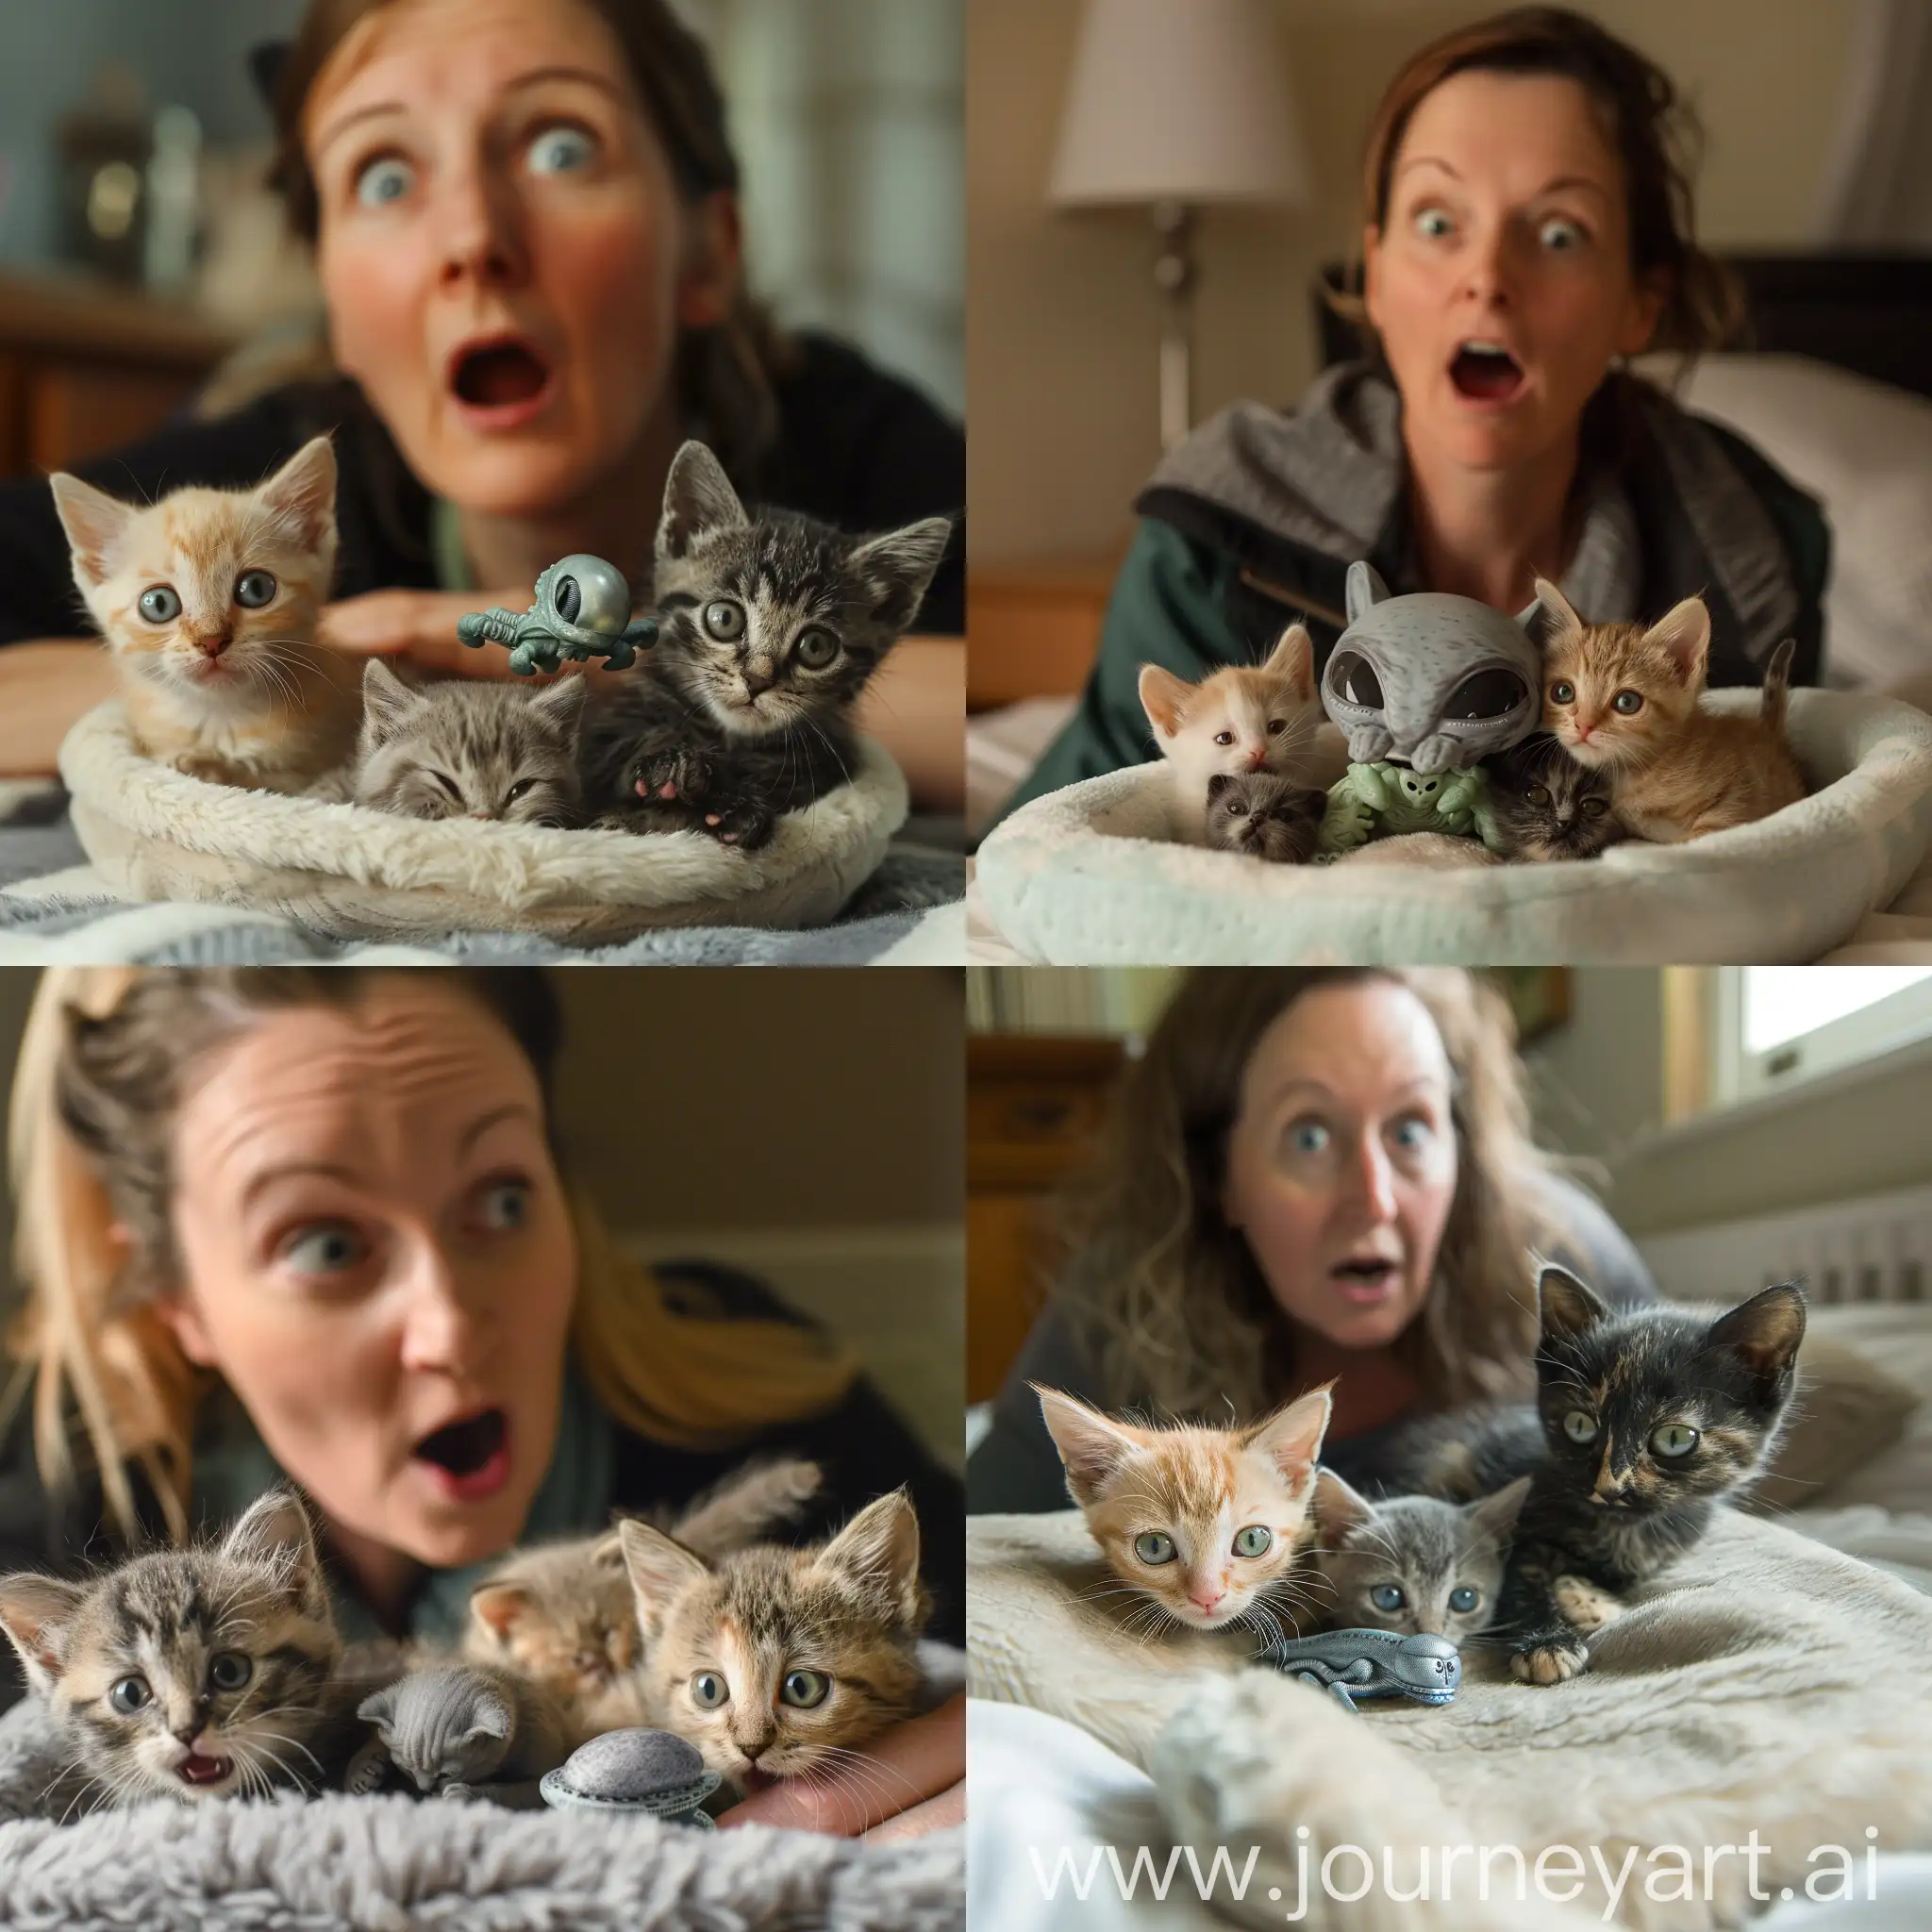 Woman-Astonished-by-Kittens-Cuddling-Alien